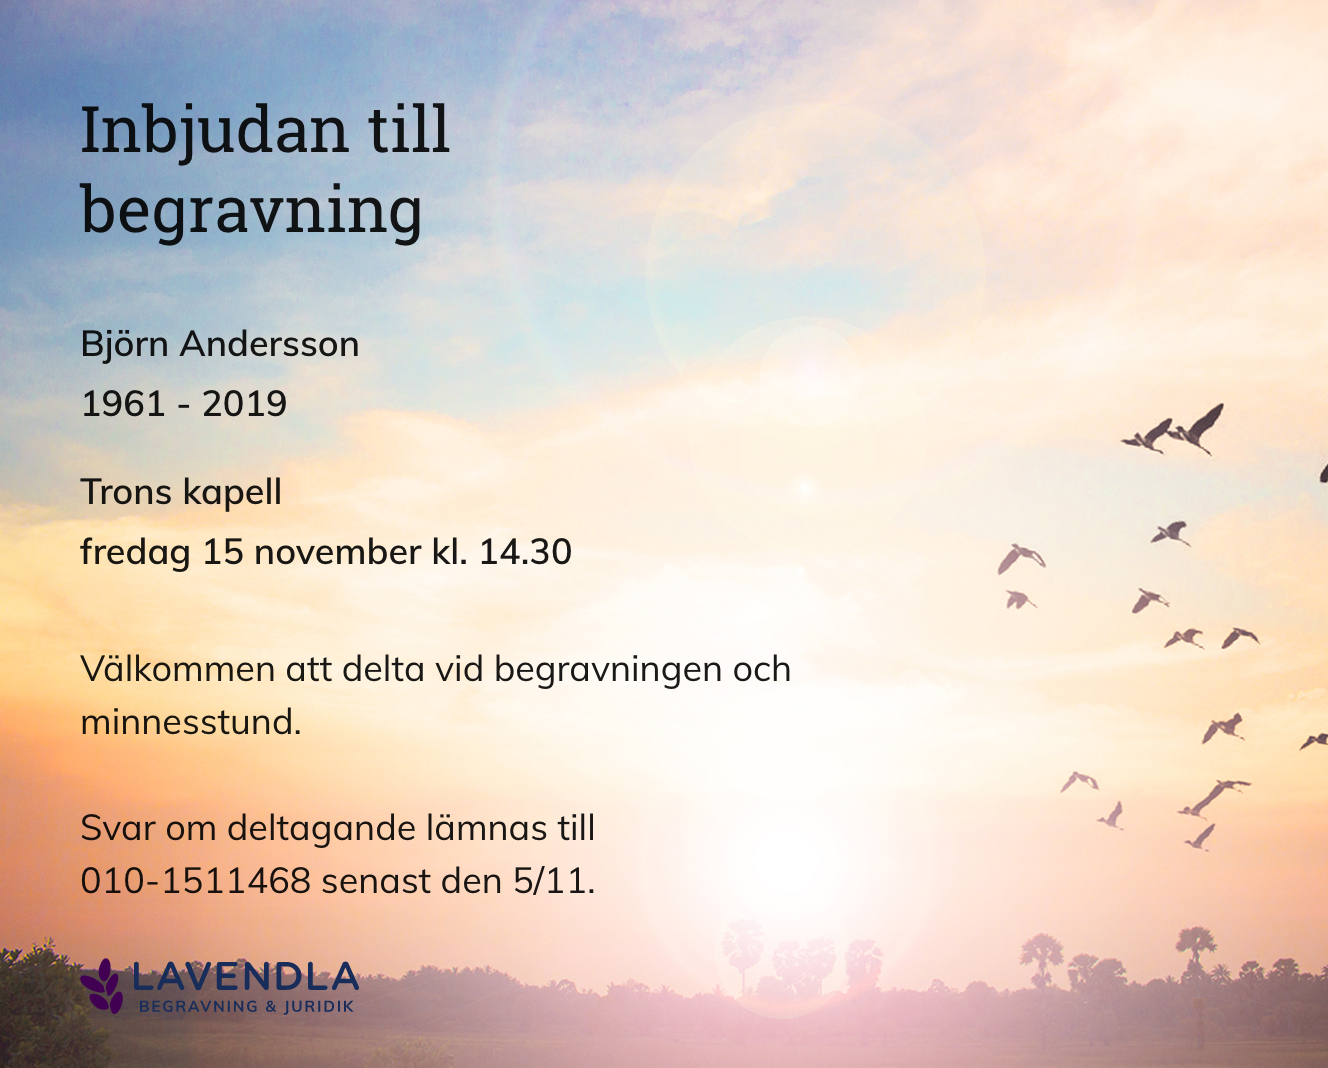 Inbjudningskort till ceremonin för Björn Andersson